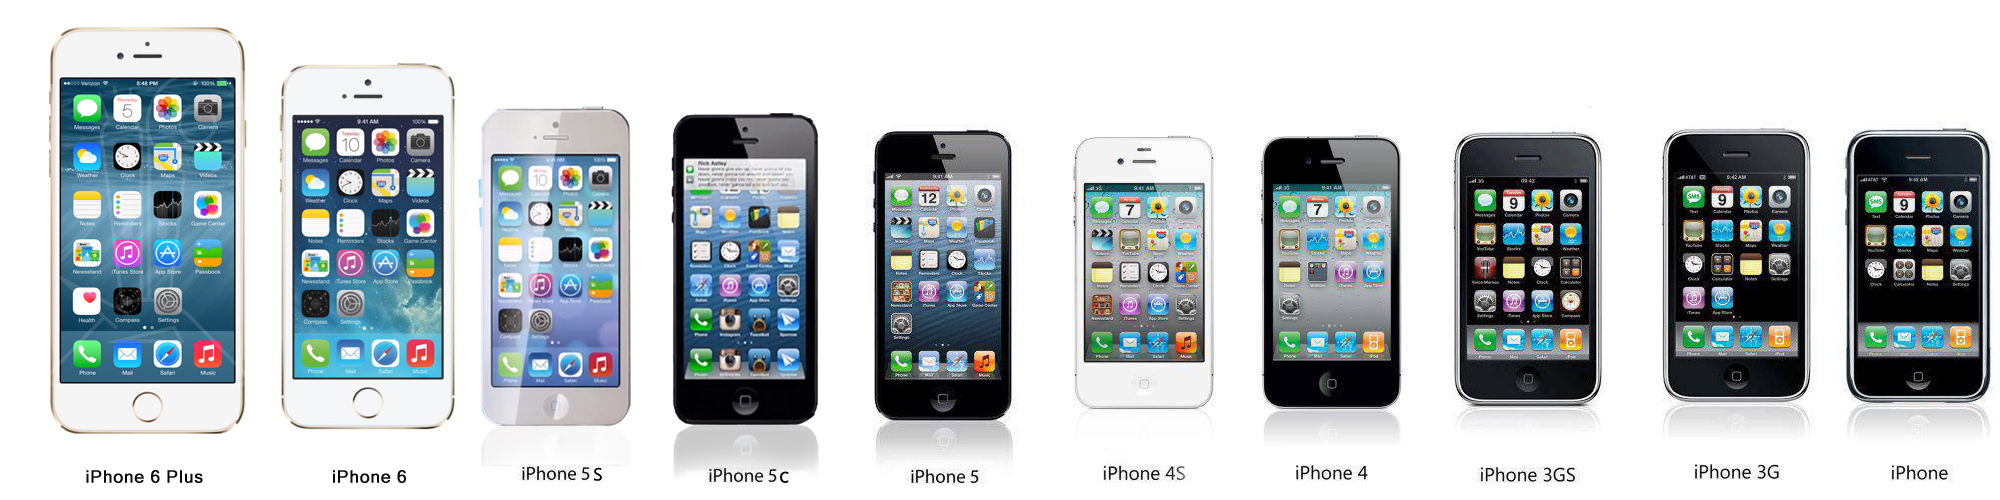 Айфон выходы моделей. Айфон линейка моделей. Айфоны в ряд. Модельный ряд айфонов. Поколение айфонов.